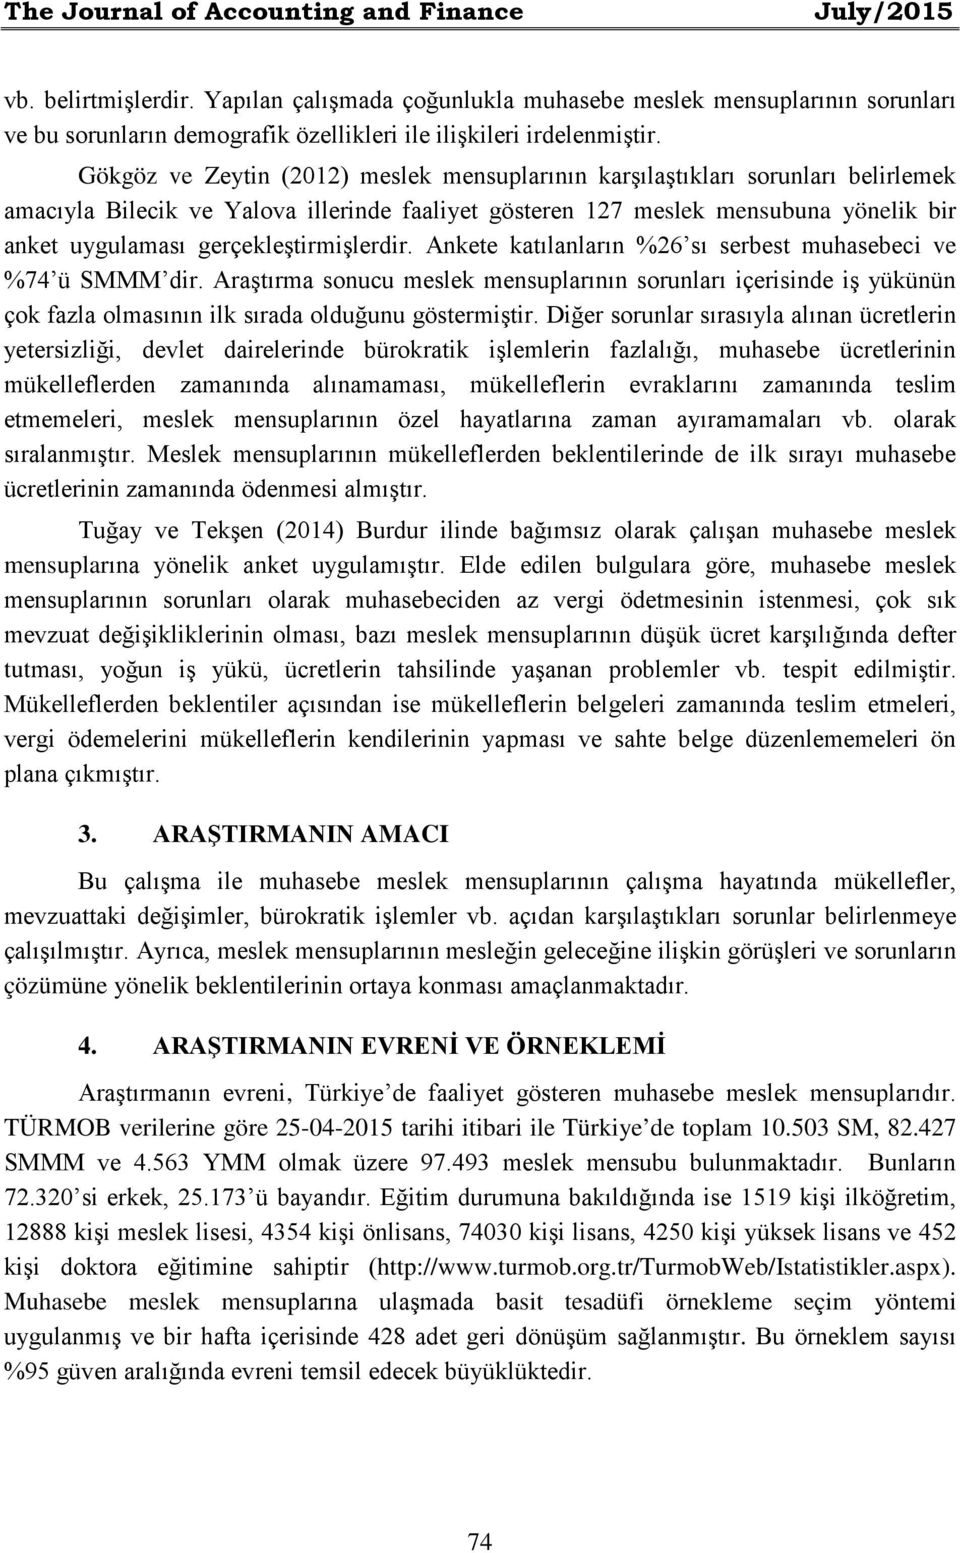 Gökgöz ve Zeytin (2012) meslek mensuplarının karşılaştıkları sorunları belirlemek amacıyla Bilecik ve Yalova illerinde faaliyet gösteren 127 meslek mensubuna yönelik bir anket uygulaması